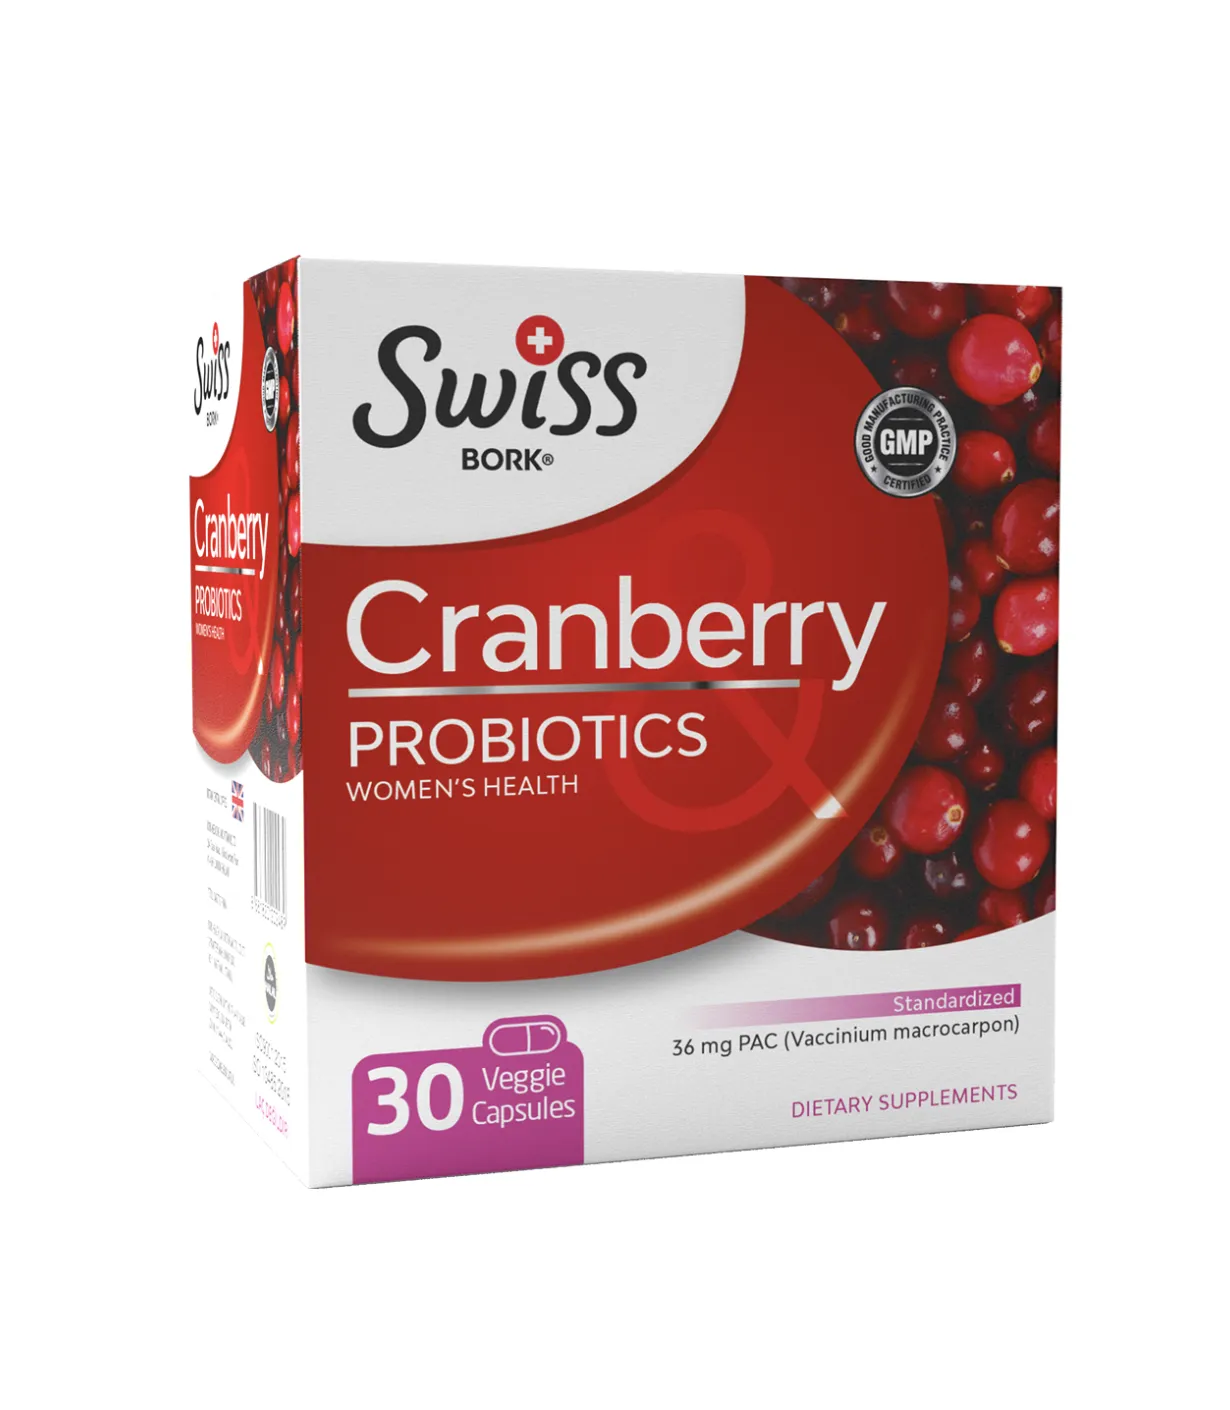 Капсулы для похудения Swiss BORK, Пробиотики с клюквой и Д-маннозой для женщин, 30 шт#2